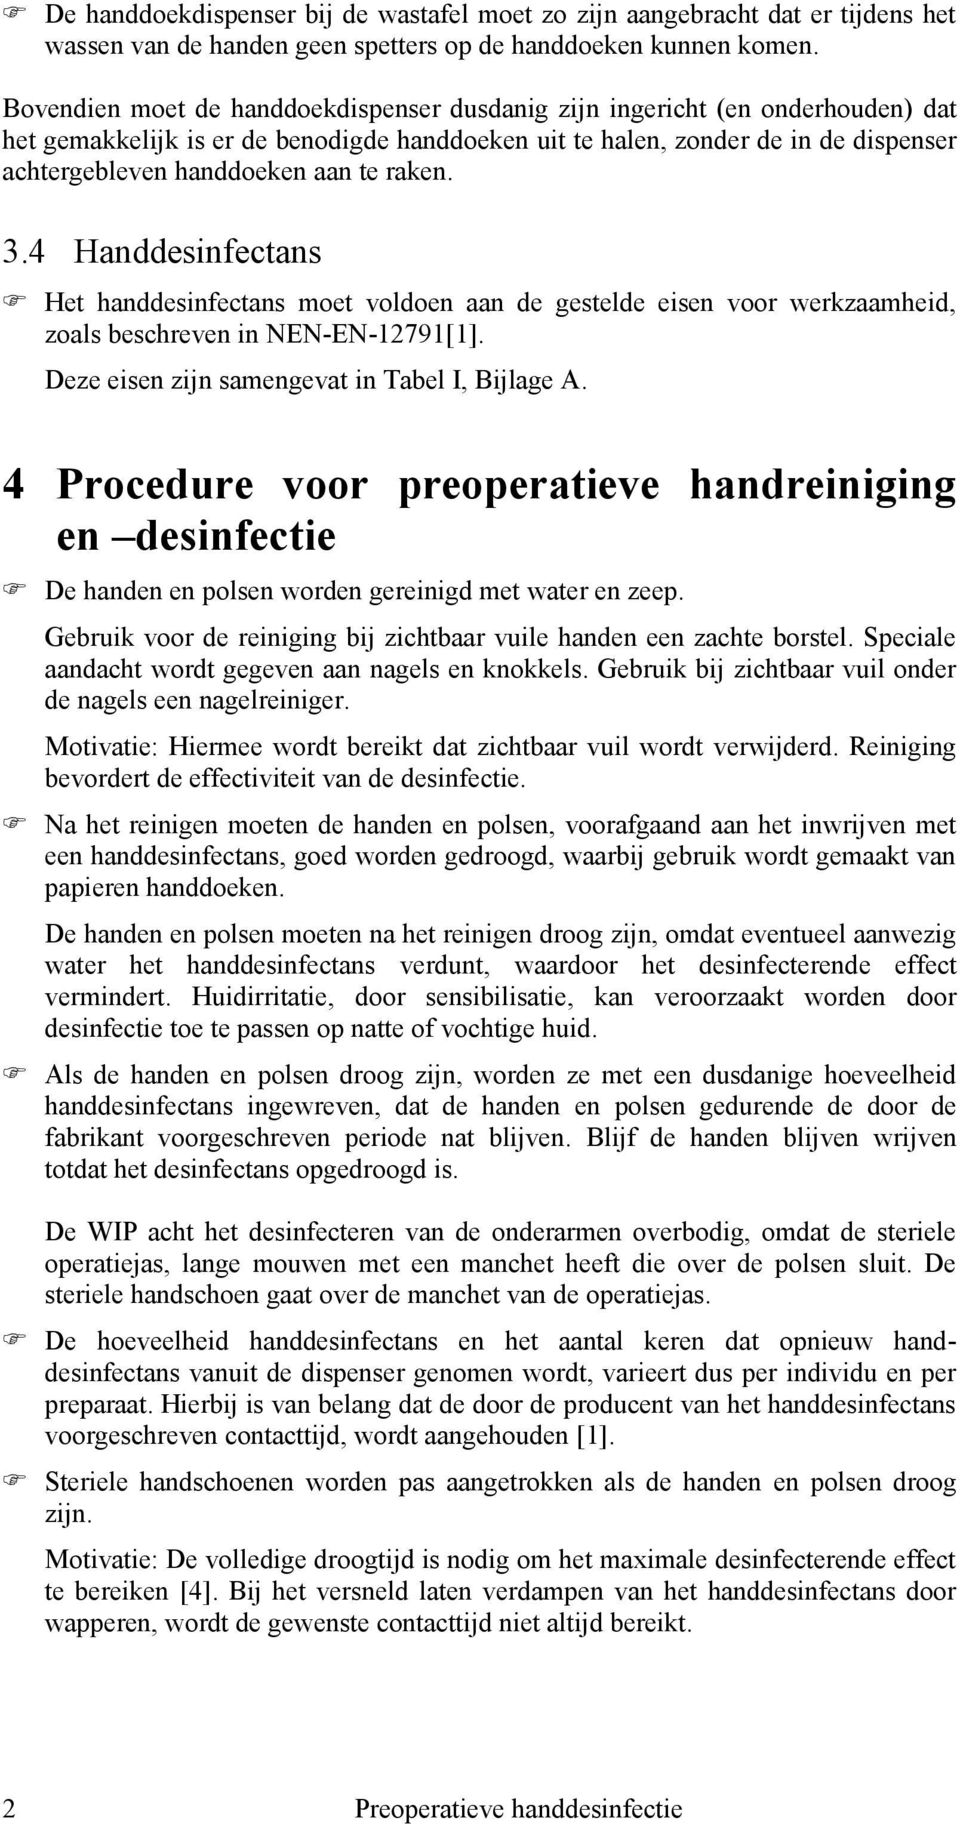 raken. 3.4 Handdesinfectans Het handdesinfectans moet voldoen aan de gestelde eisen voor werkzaamheid, zoals beschreven in NEN-EN-12791[1]. Deze eisen zijn samengevat in Tabel I, Bijlage A.